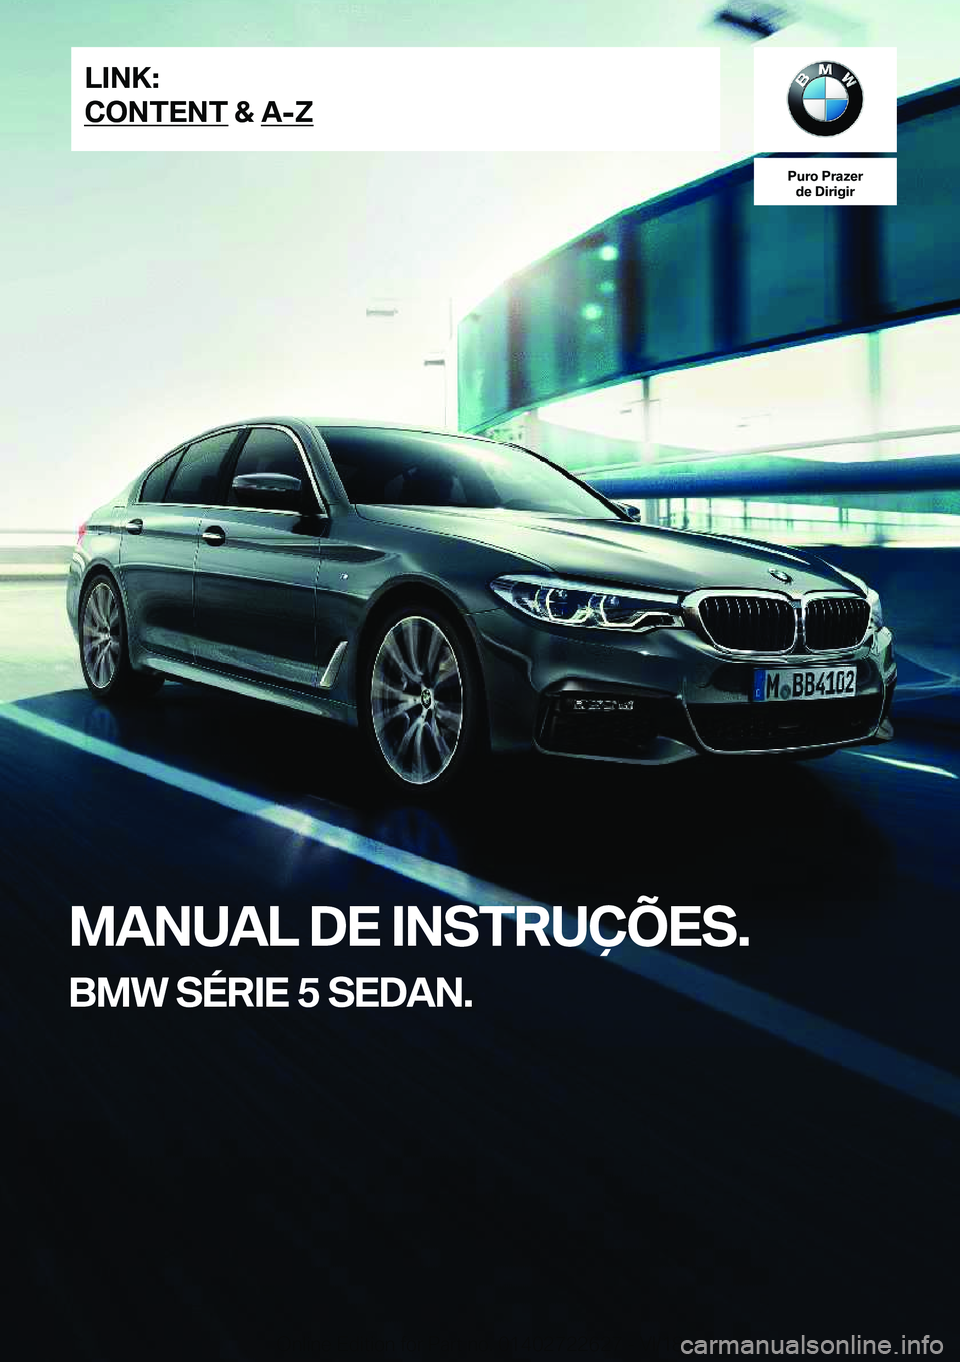 BMW 5 SERIES 2019  Manual do condutor (in Portuguese) �P�u�r�o��P�r�a�z�e�r�d�e��D�i�r�i�g�i�r
�M�A�N�U�A�L��D�E��I�N�S�T�R�U�